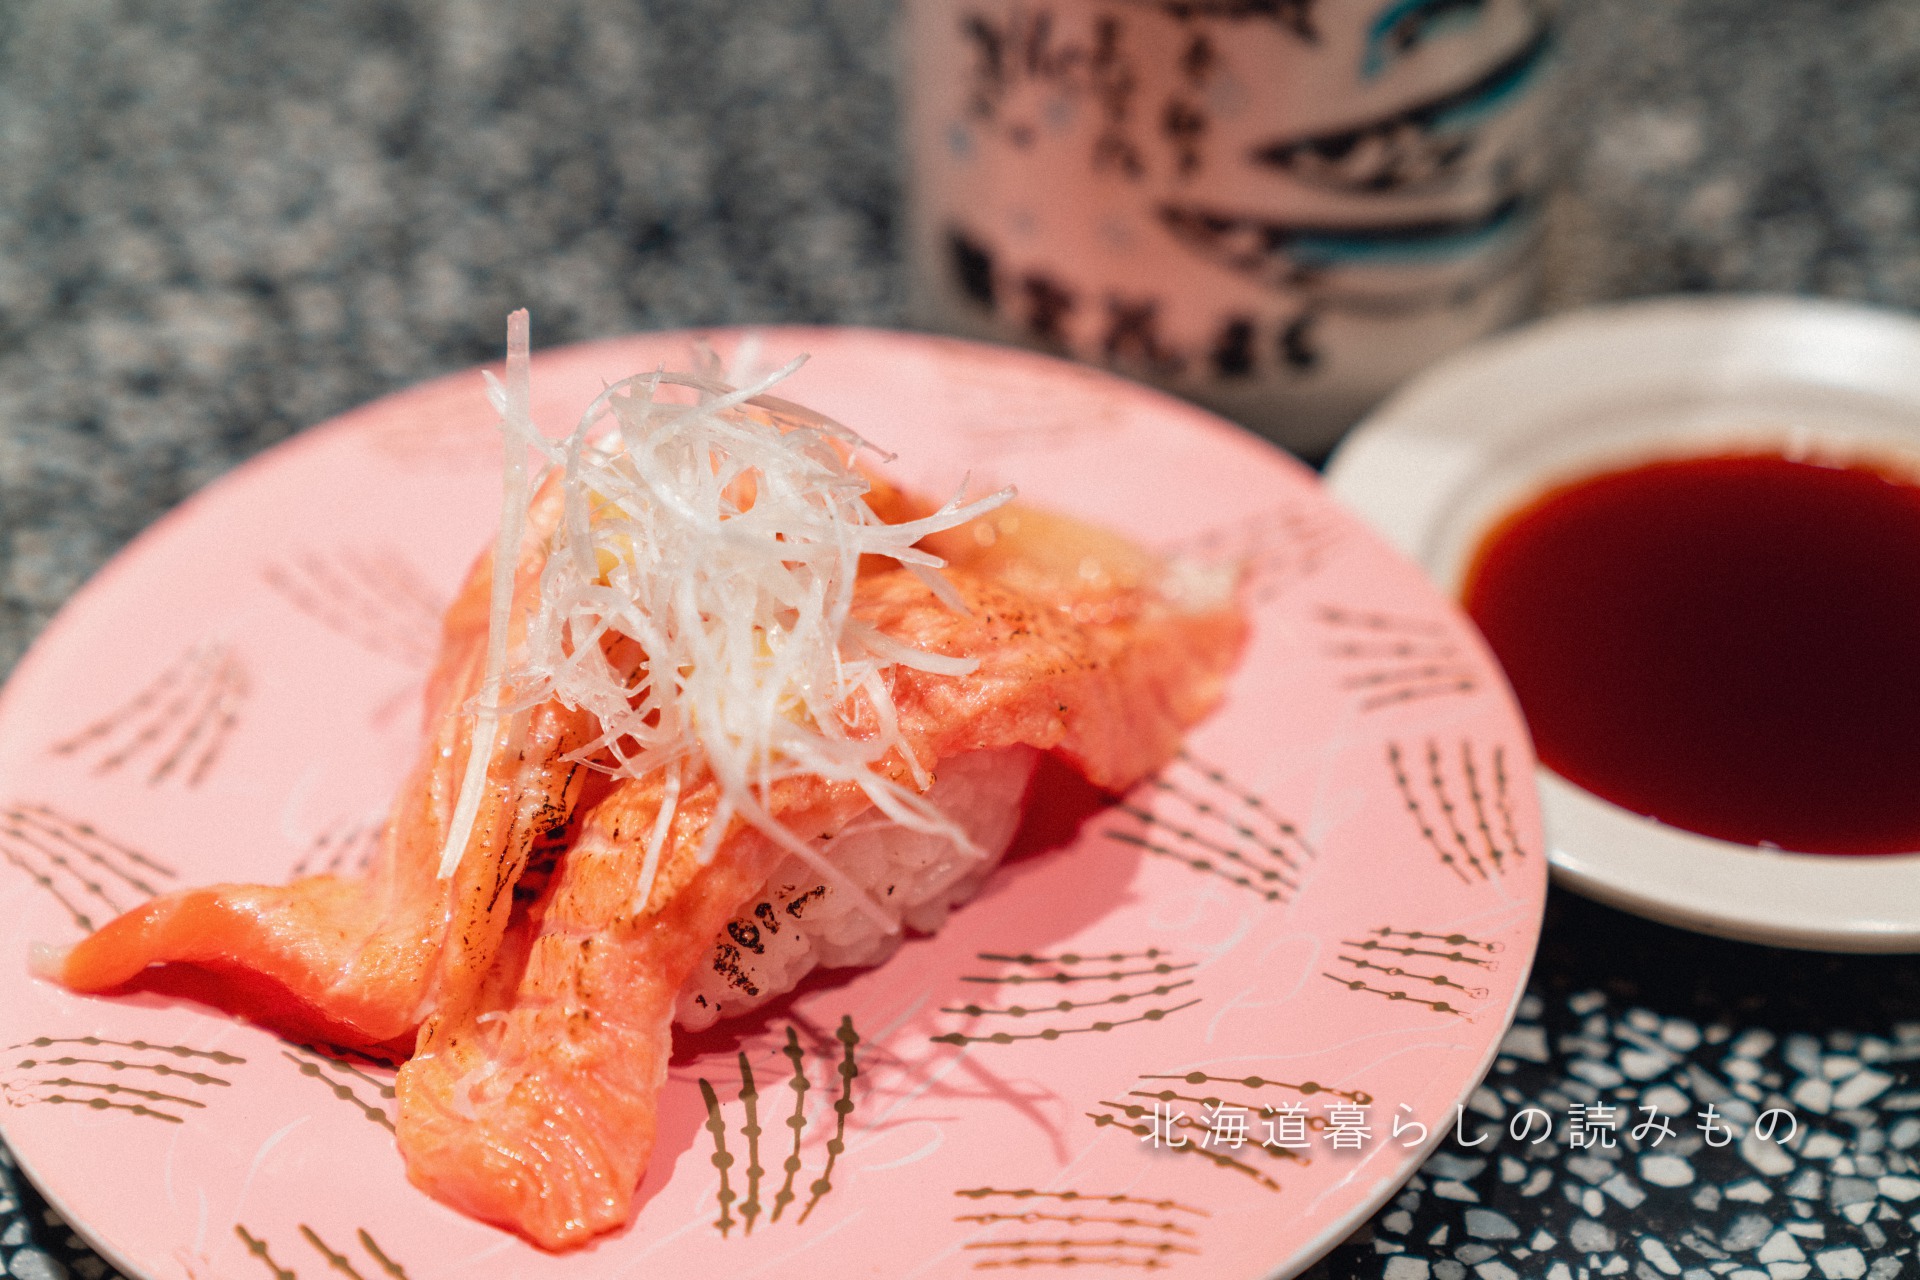 迴轉壽司根室花丸的菜單上的「烤三文魚」